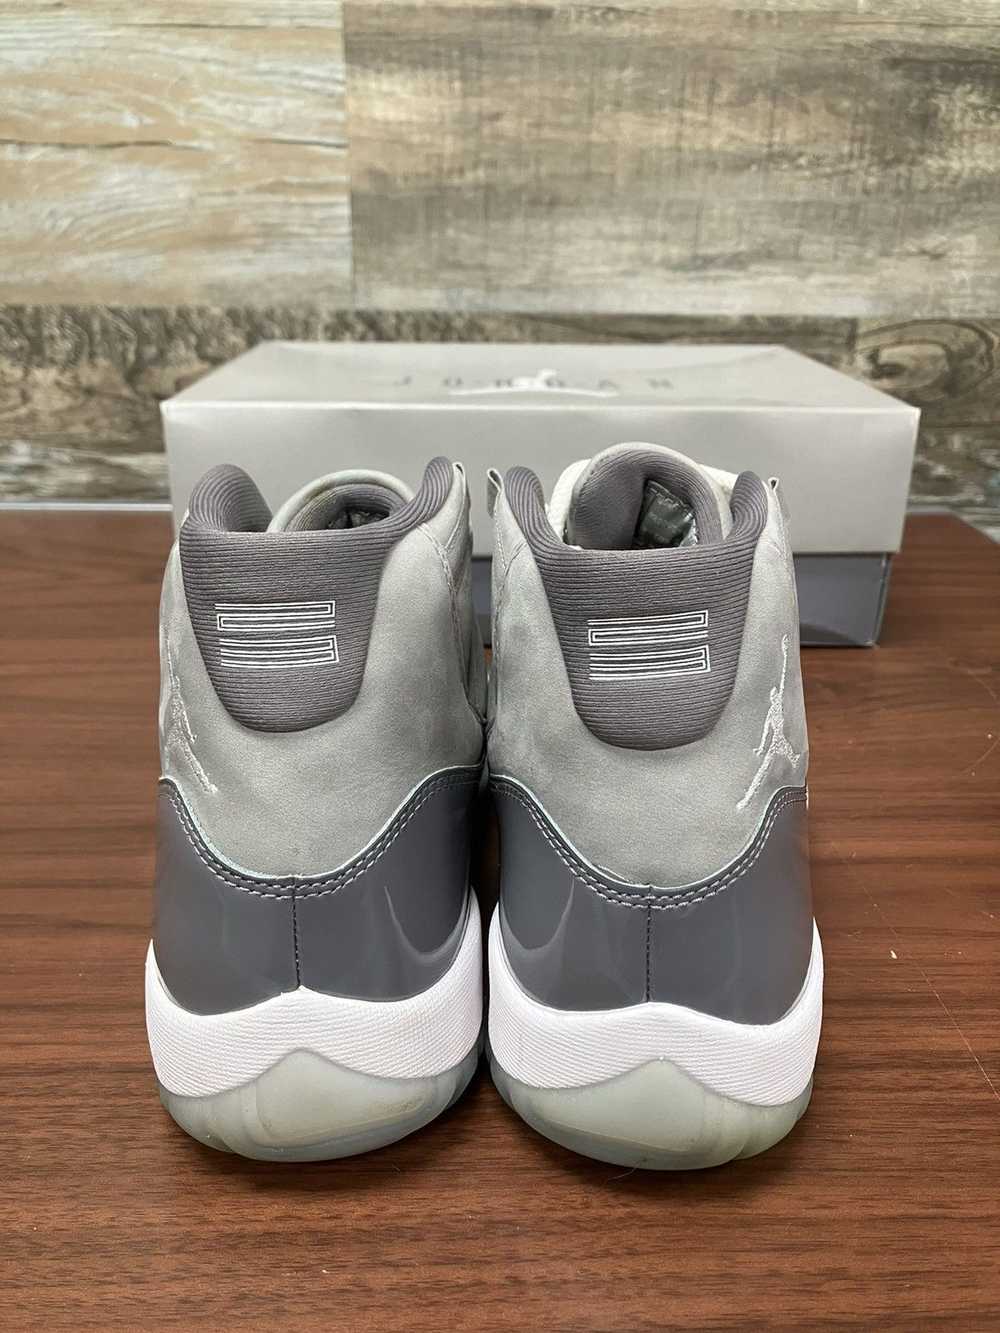 Jordan Brand Air Jordan 11 Cool Grey Size 9.5 - image 4